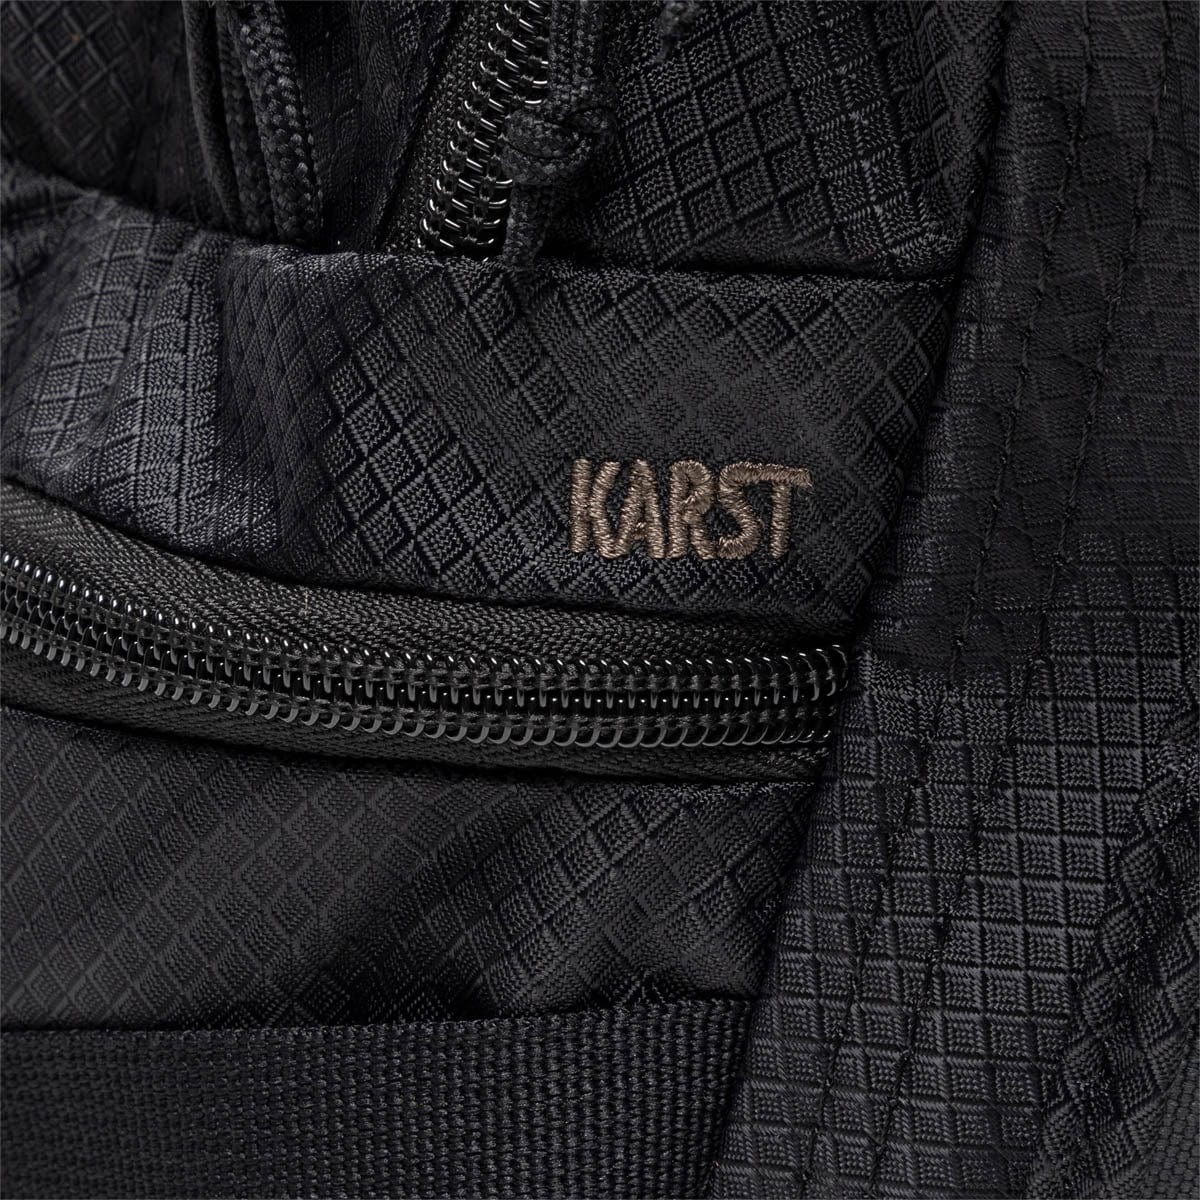 Nike Bags BLACK/DK SMOKE GREY/IRONSTONE [013] / O/S ACG KARST BACKPACK